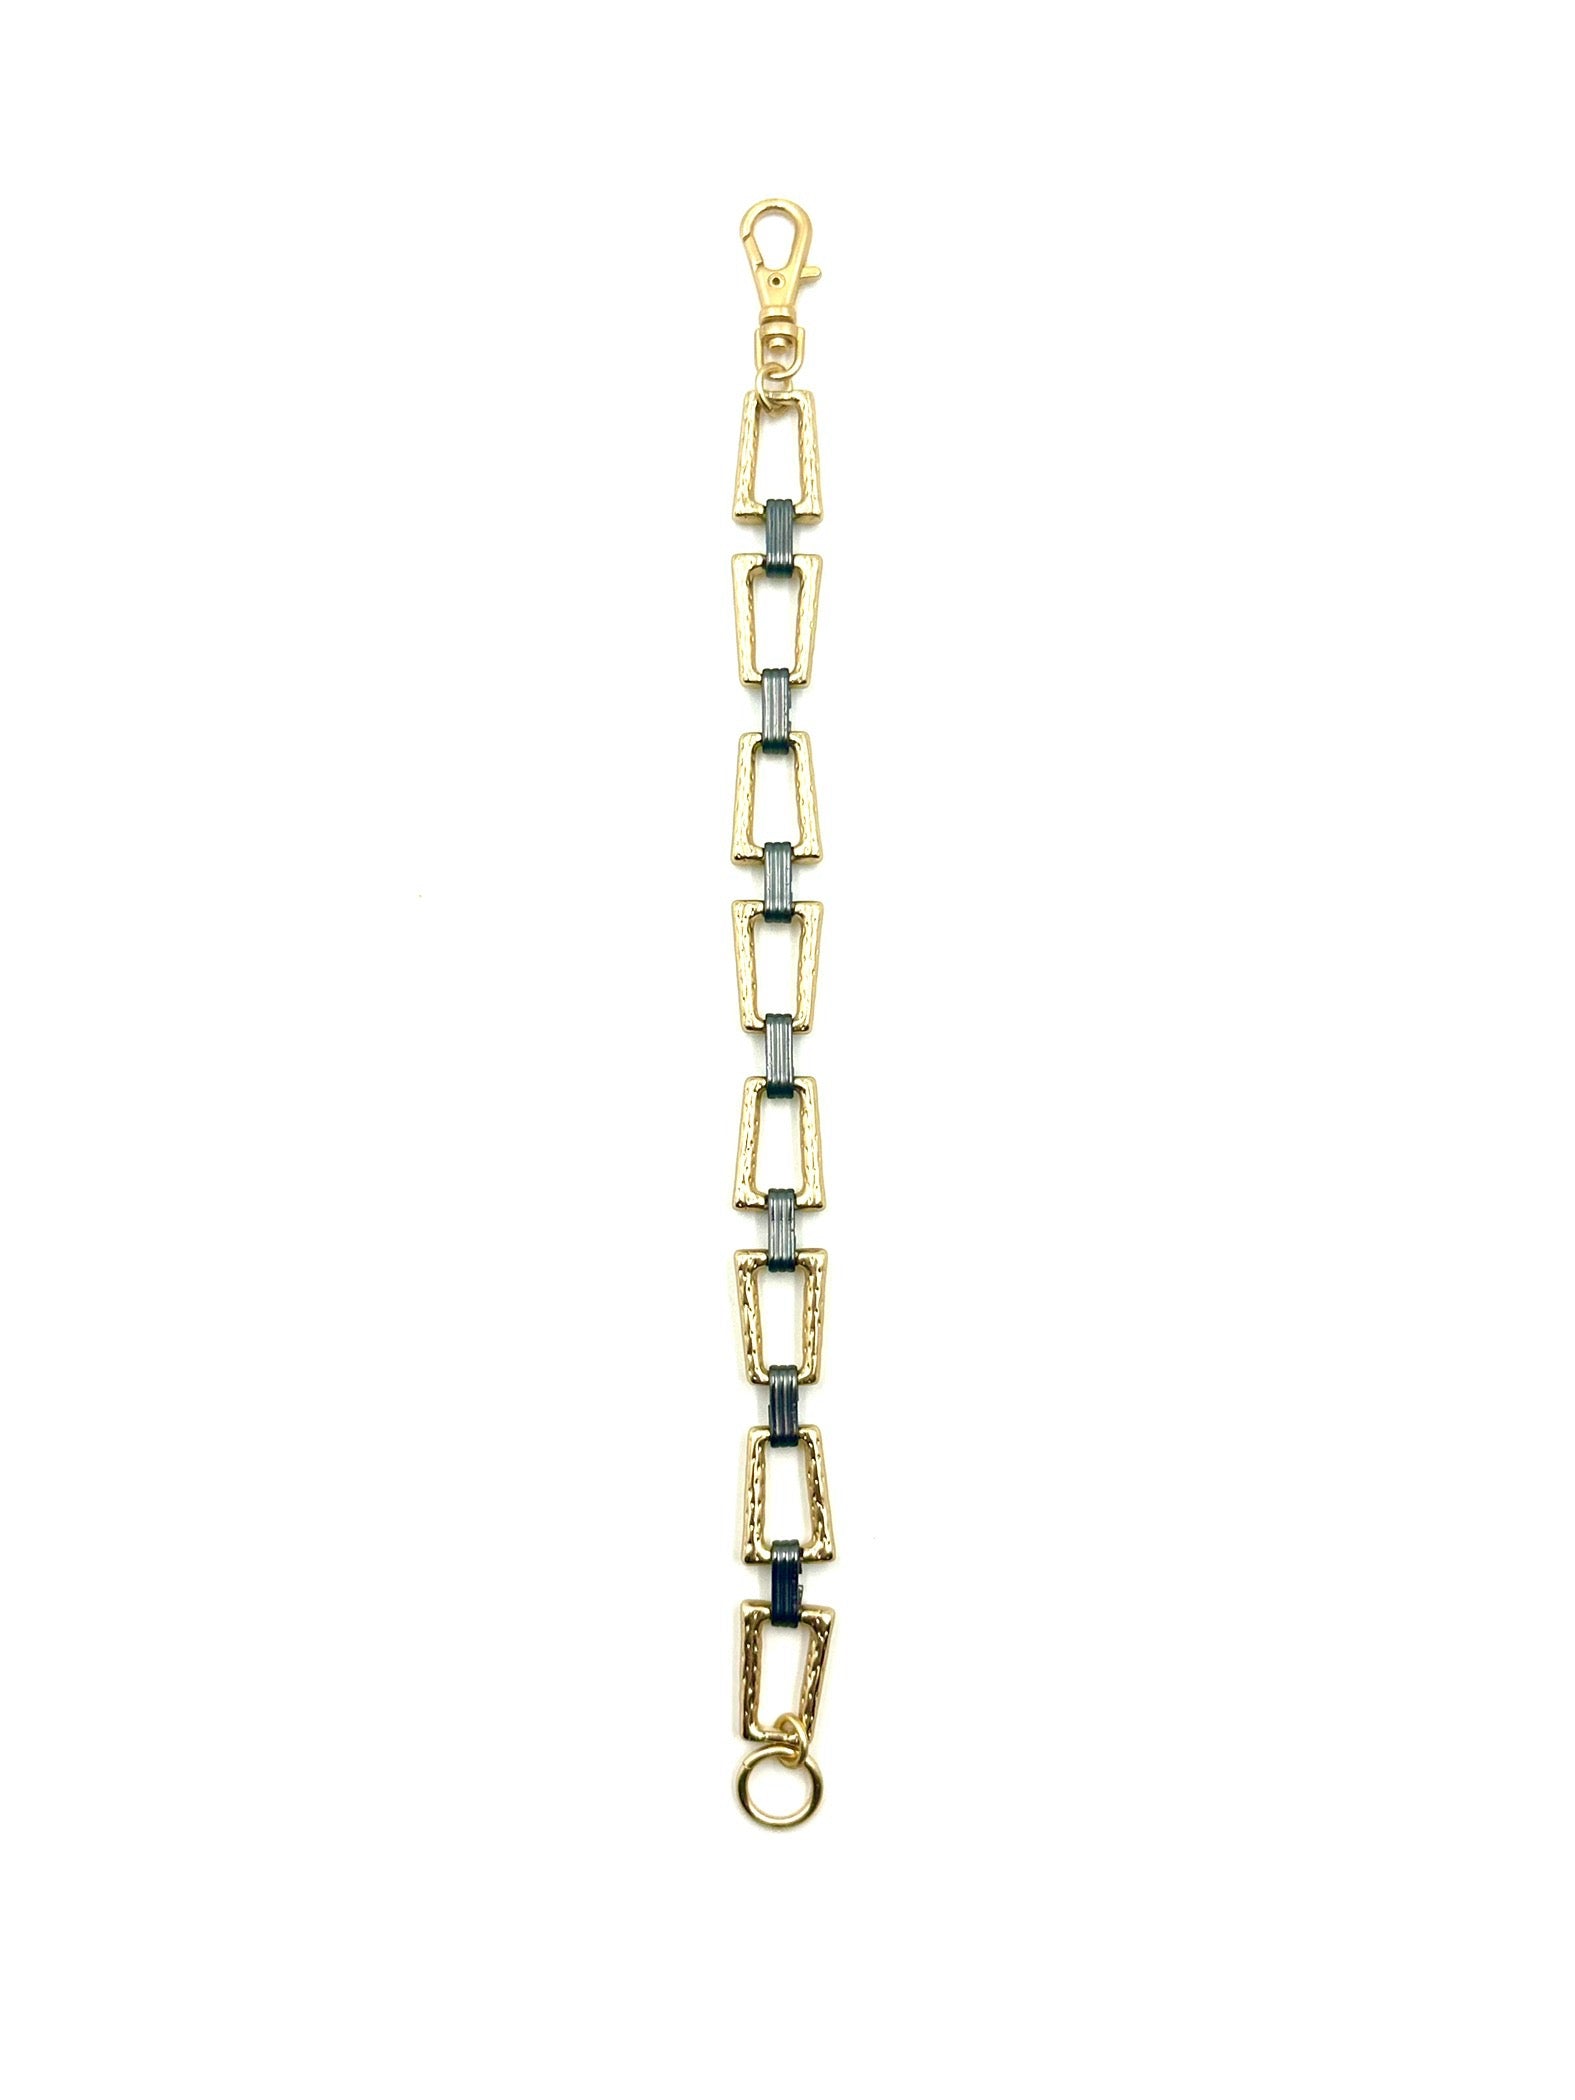 Retro B - Contemporary 2-tone chain link bracelet